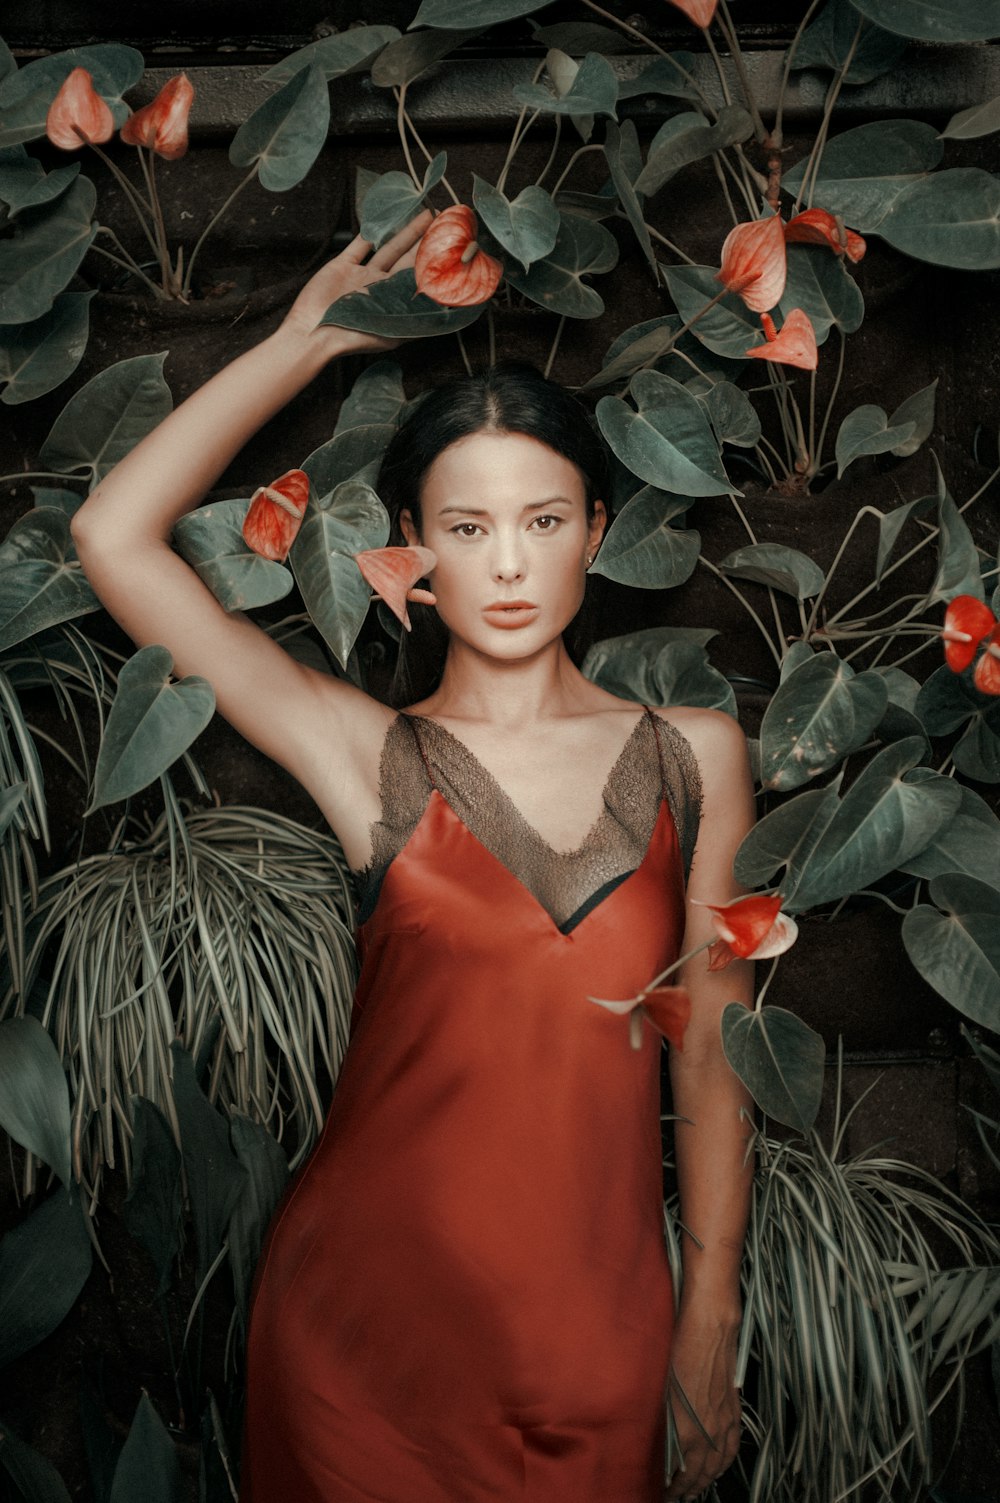 Femme en nuisette grise et rouge par Plants